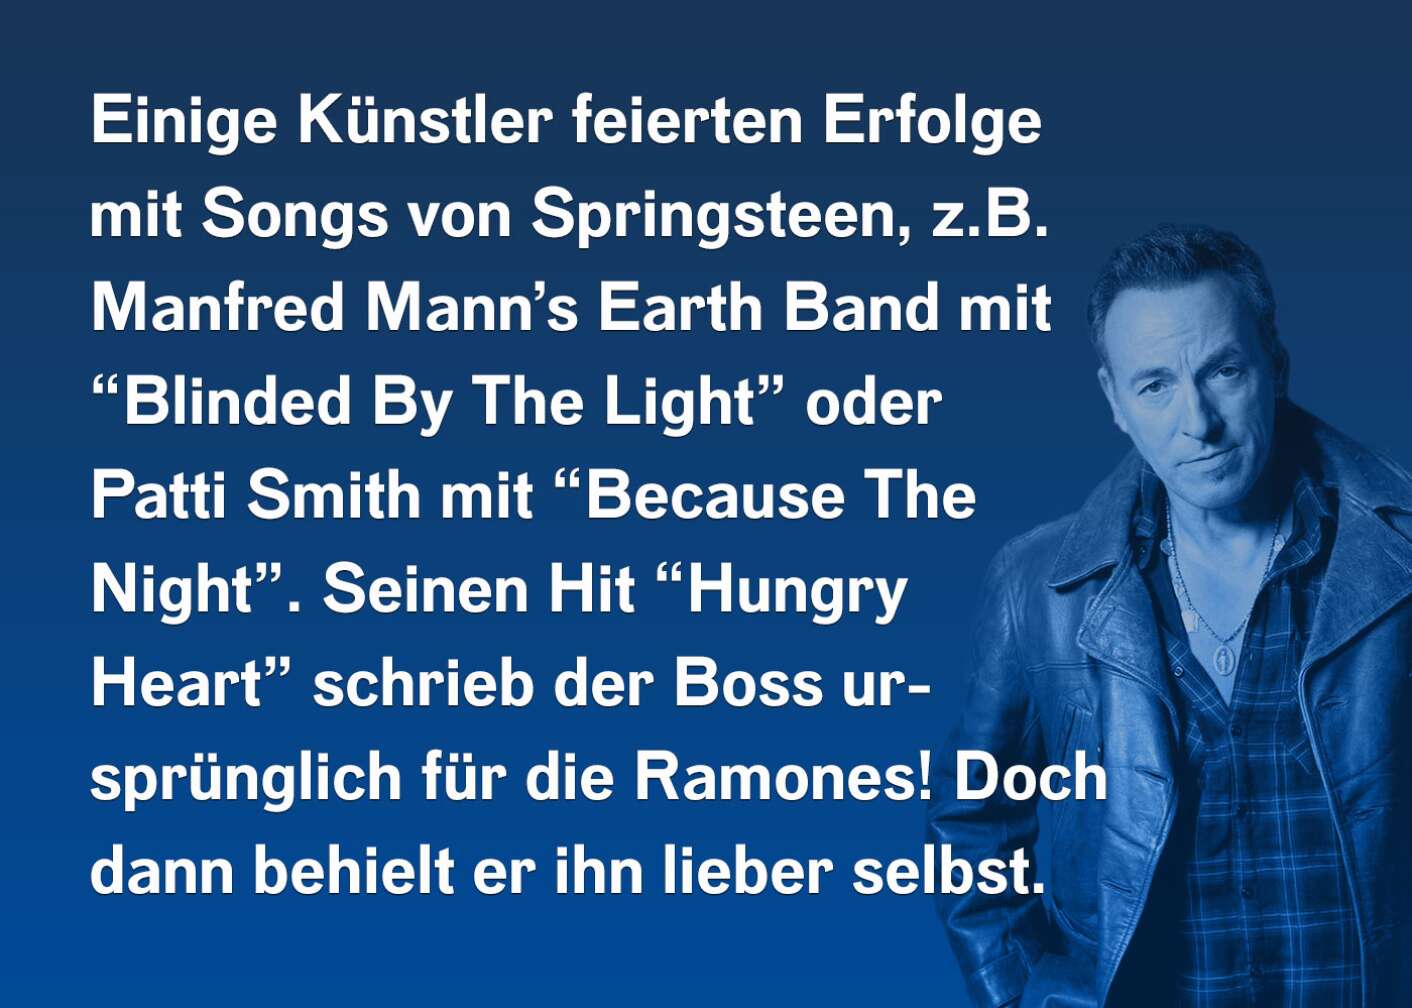 Einige Künstler feierten Erfolge mit Songs von Springsteen, z.B. Manfred Mann's Earth Band mit "Blinded By The Light" oder Patti Smith mit "Because The Night". Seinen Hit "Hungry Heart" schrieb der Boss ursprünglich für die Ramones! Doch dann behielt er ihn lieber selbst.